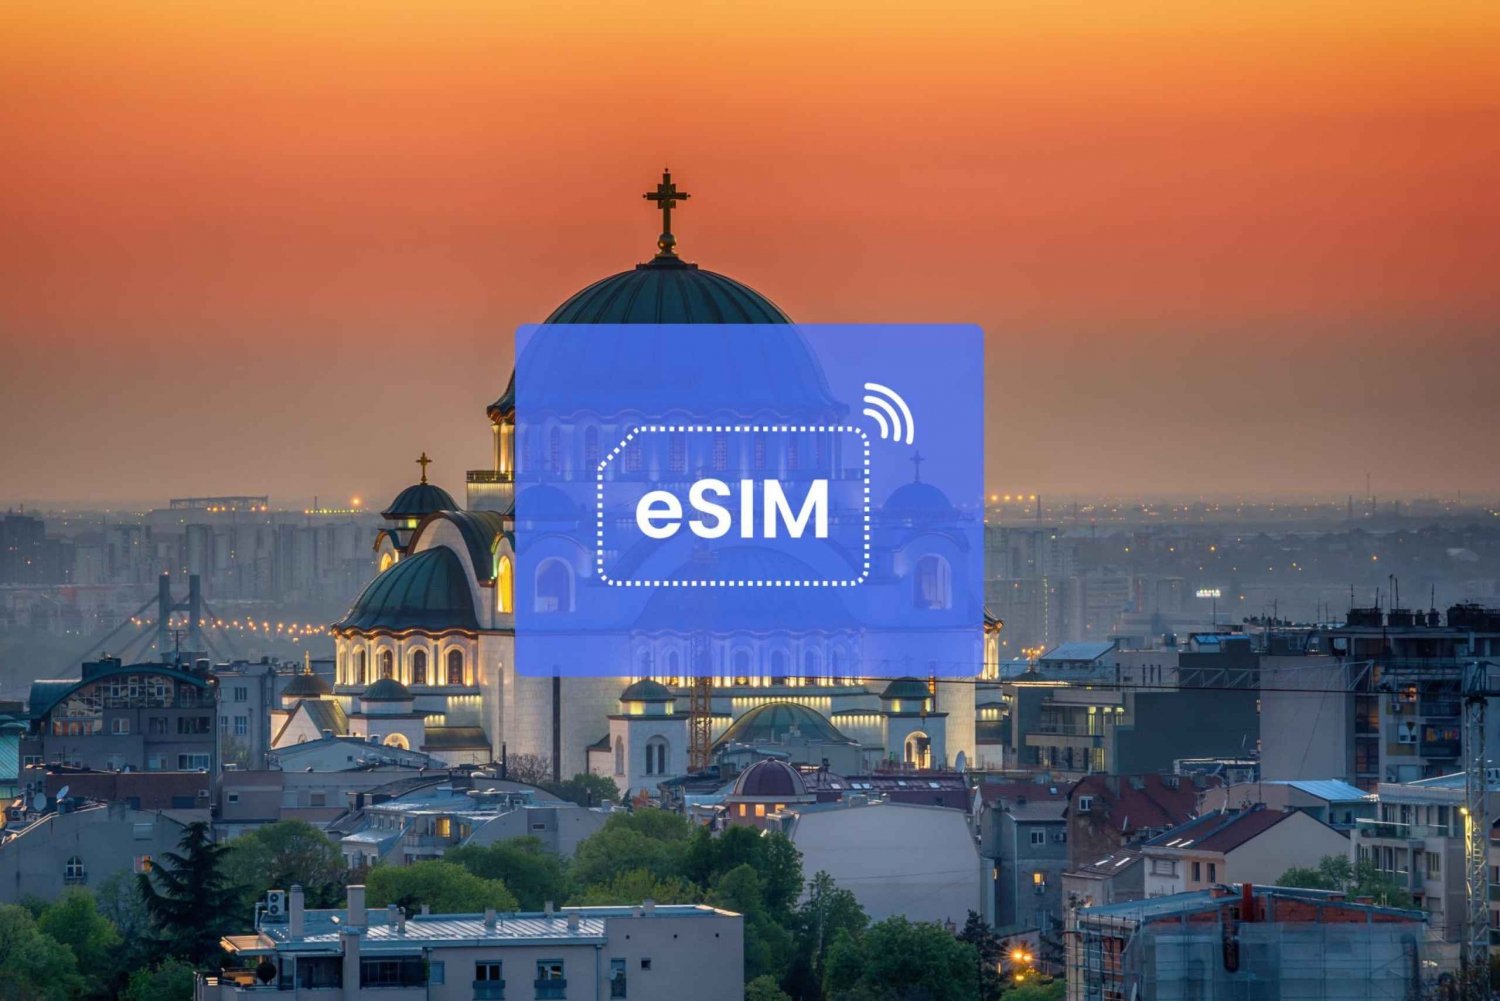 Belgrad: Serbien & EU eSIM Roaming Mobile Datenplan